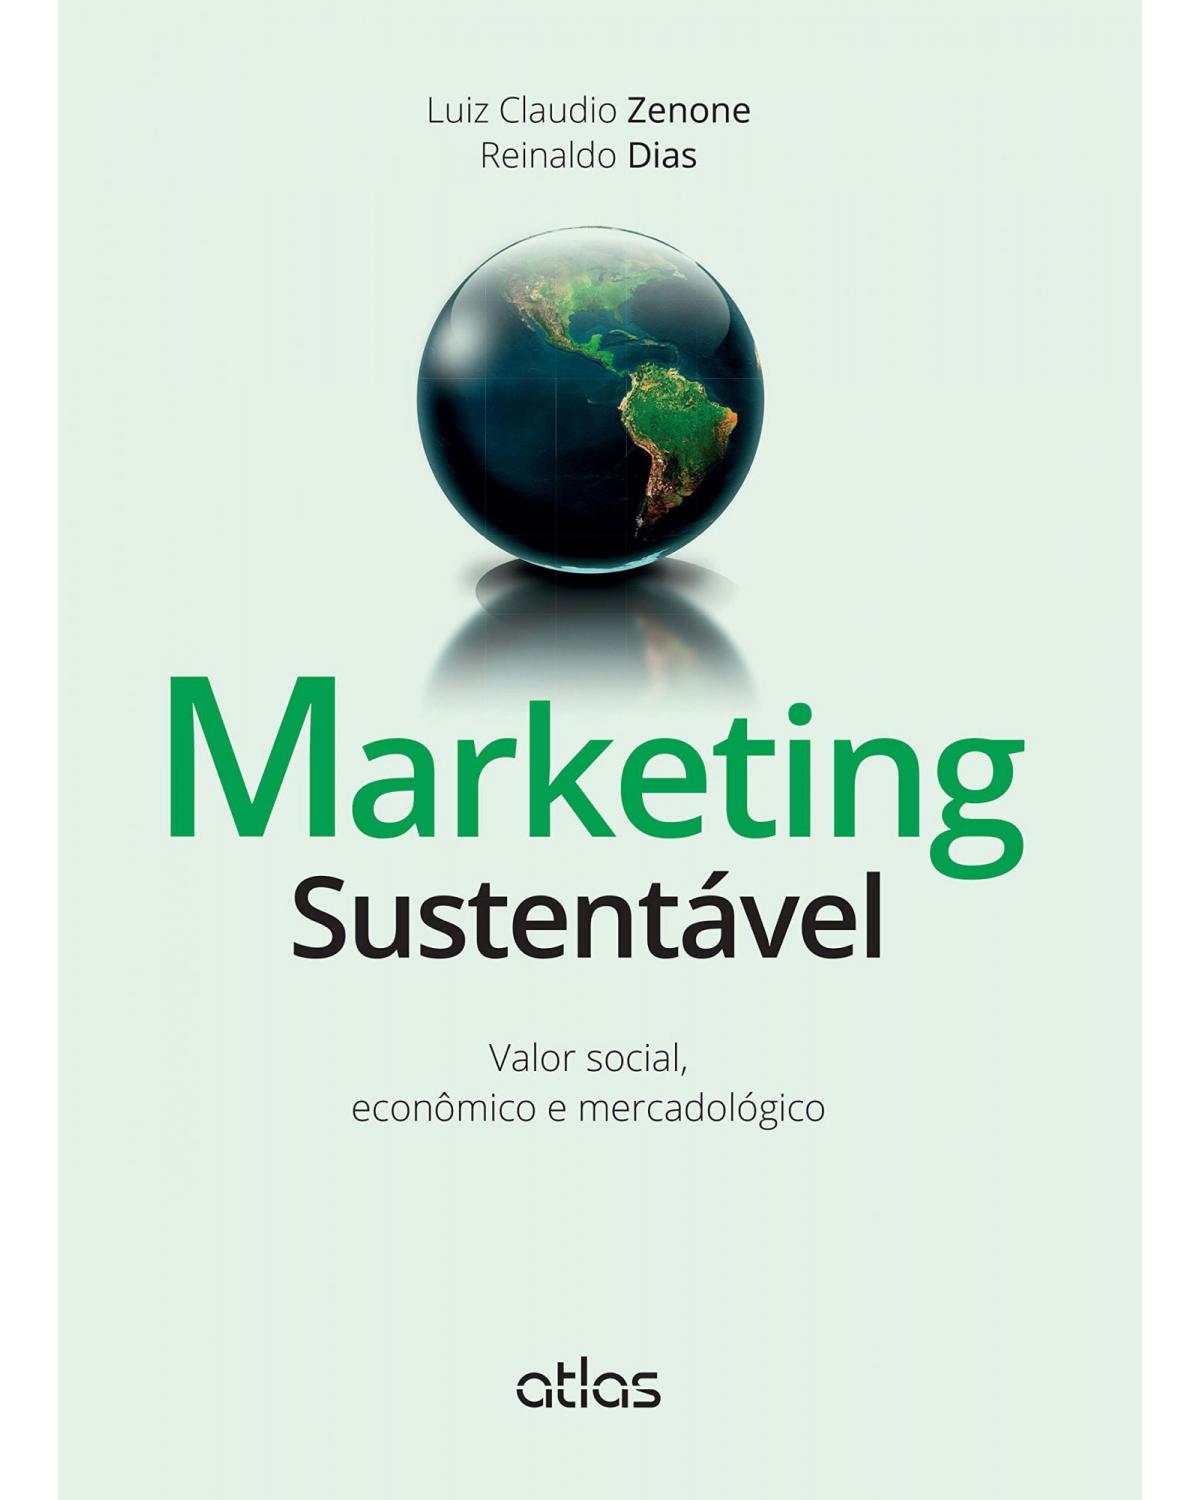 Marketing sustentável - Valor social, econômico e mercadológico - 1ª Edição | 2015